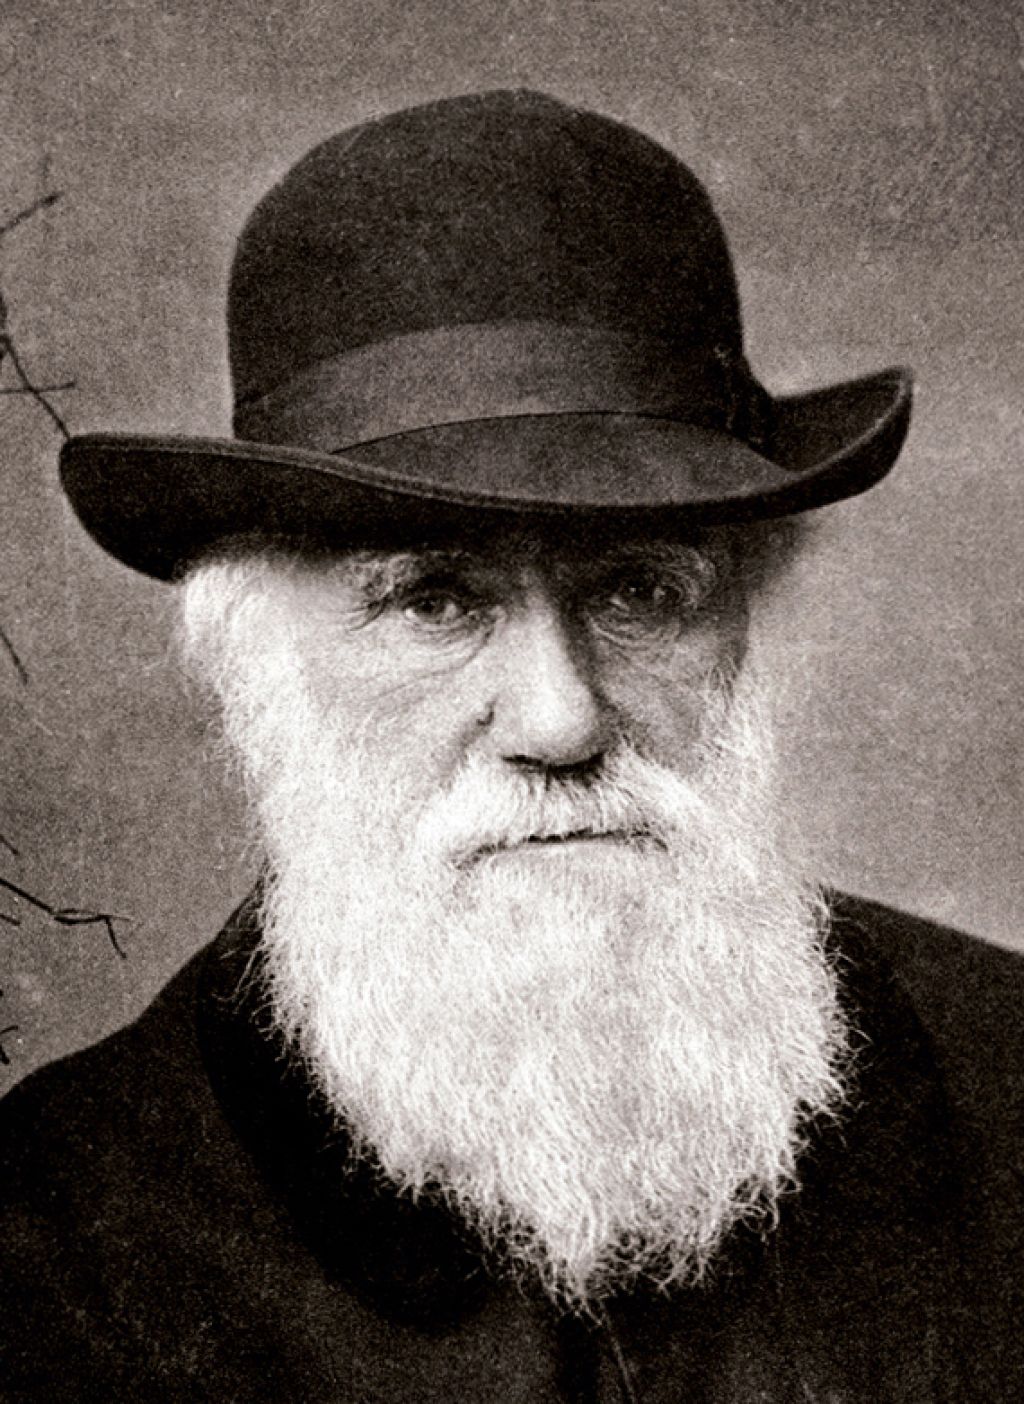 Knjižni kalejdoskop: prva predsednica Pena, Darwin in najboljše letošnje knjige